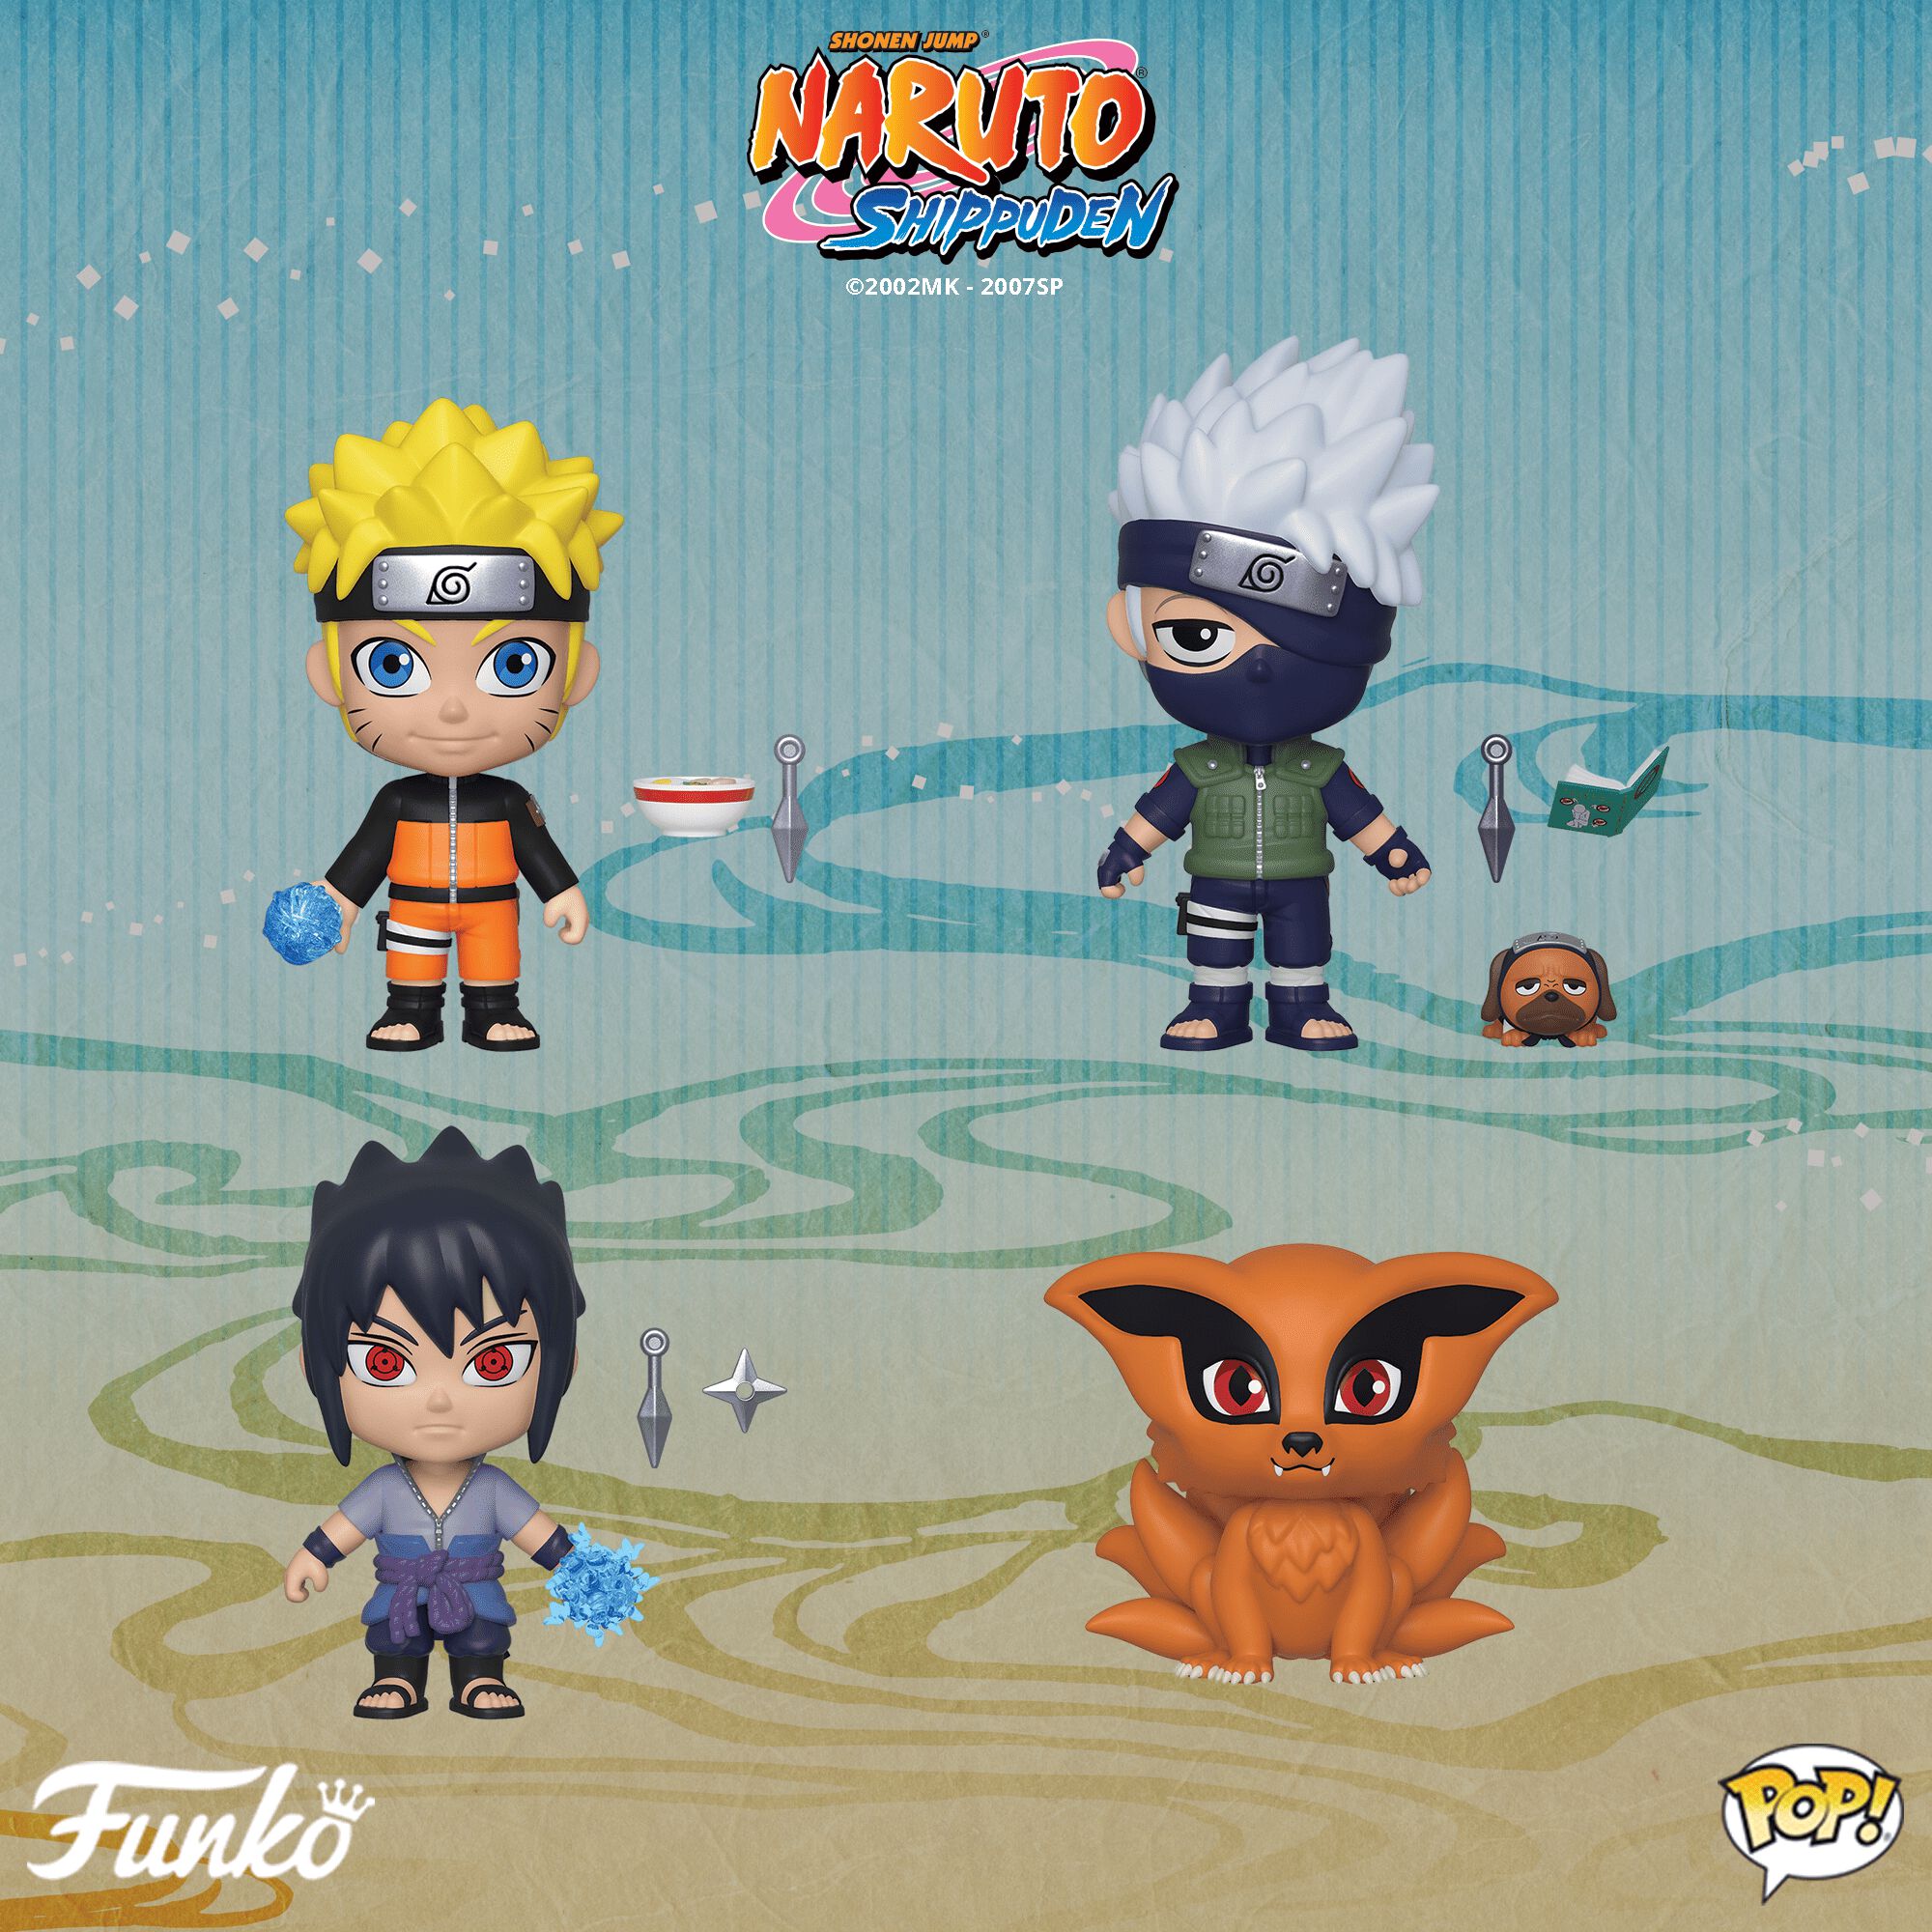 Coming Soon: 5 Star—Naruto